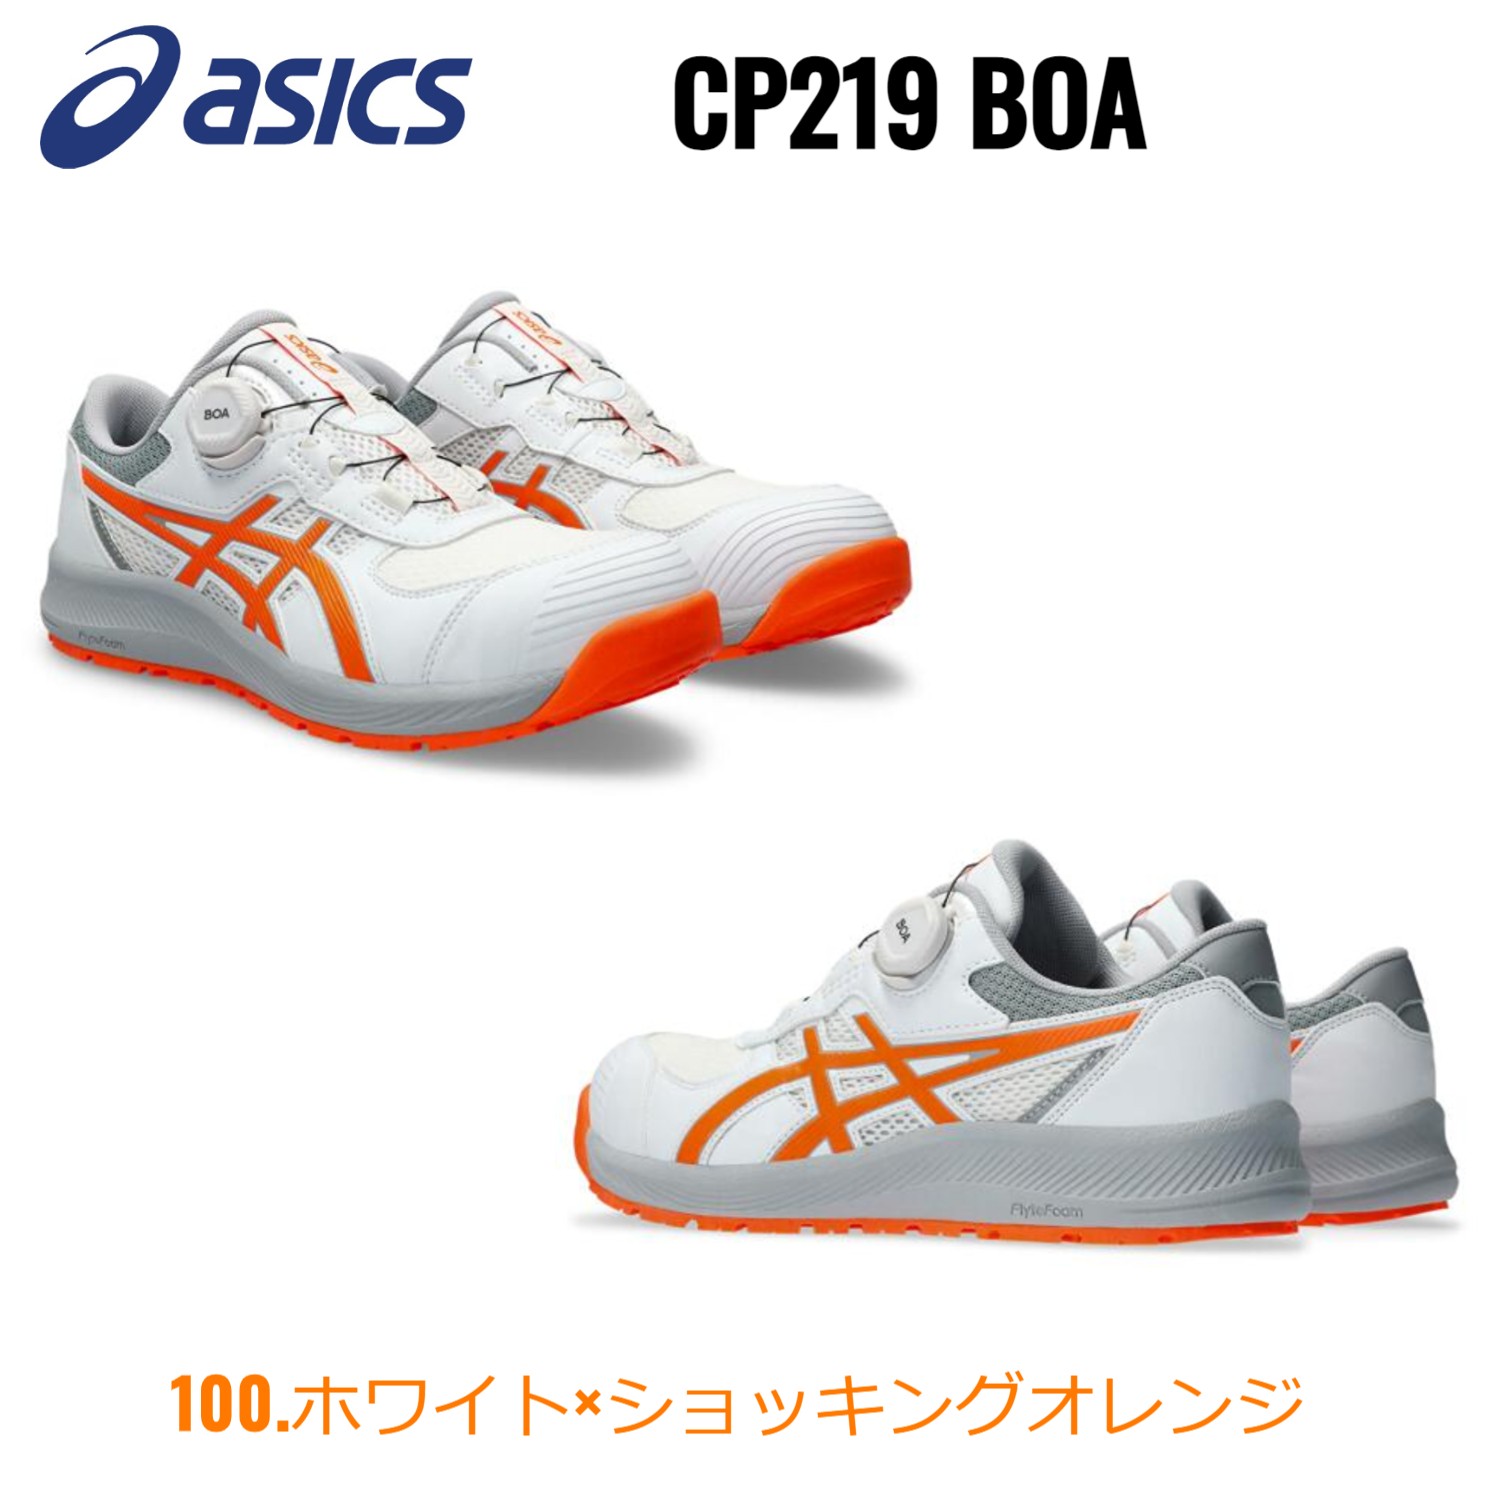 アシックス 安全靴 限定カラー ローカット ウィンジョブ asics CP219 